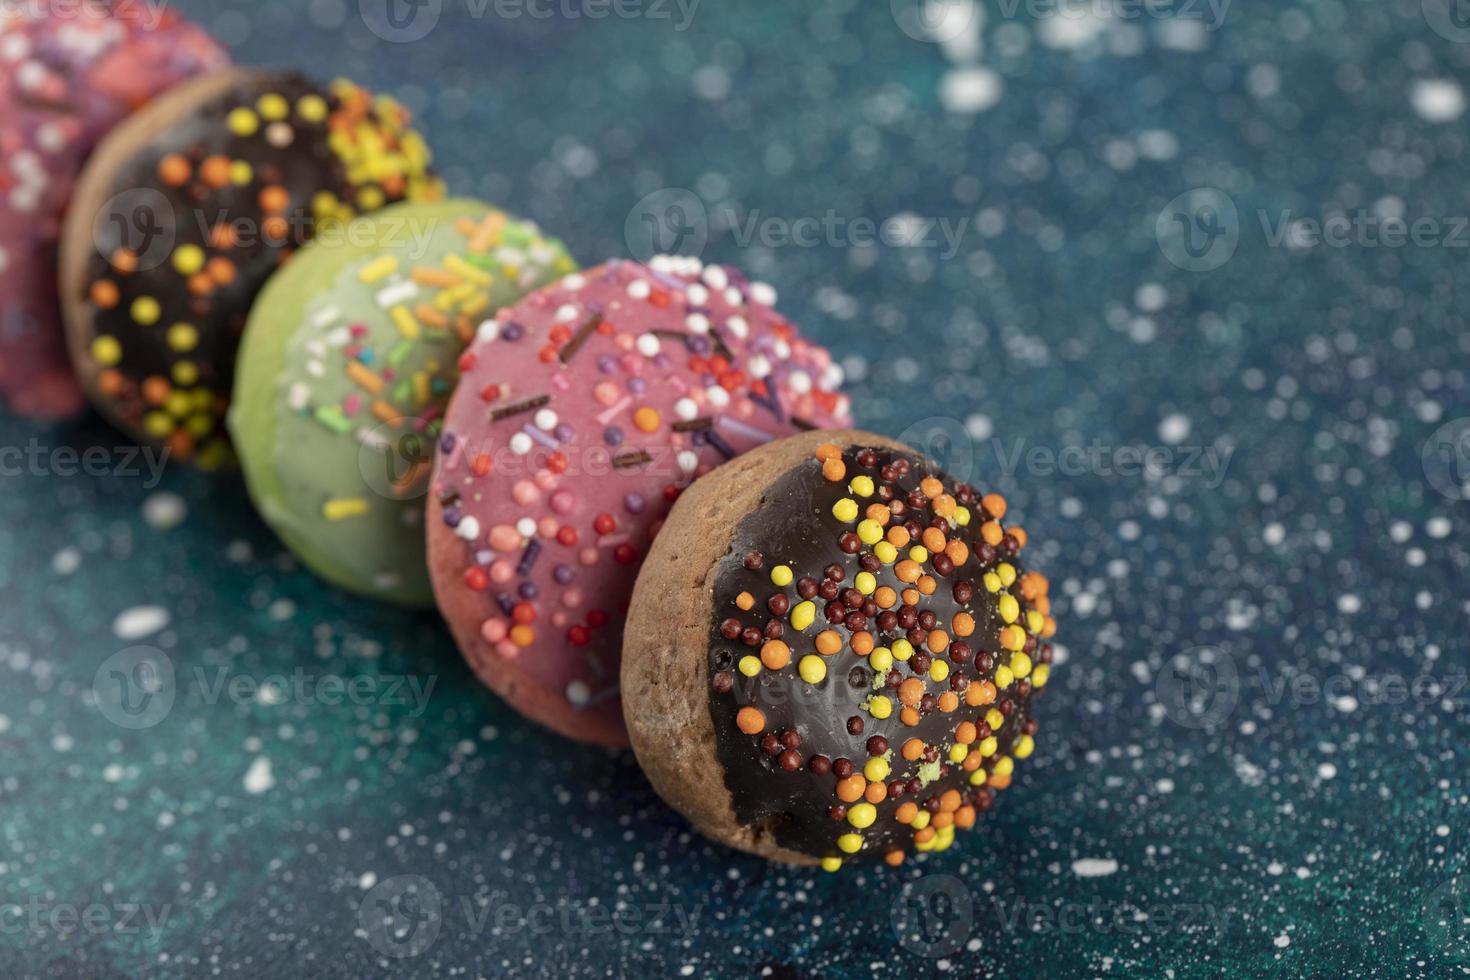 kleurrijke kleine donuts met hagelslag op een blauwe achtergrond foto